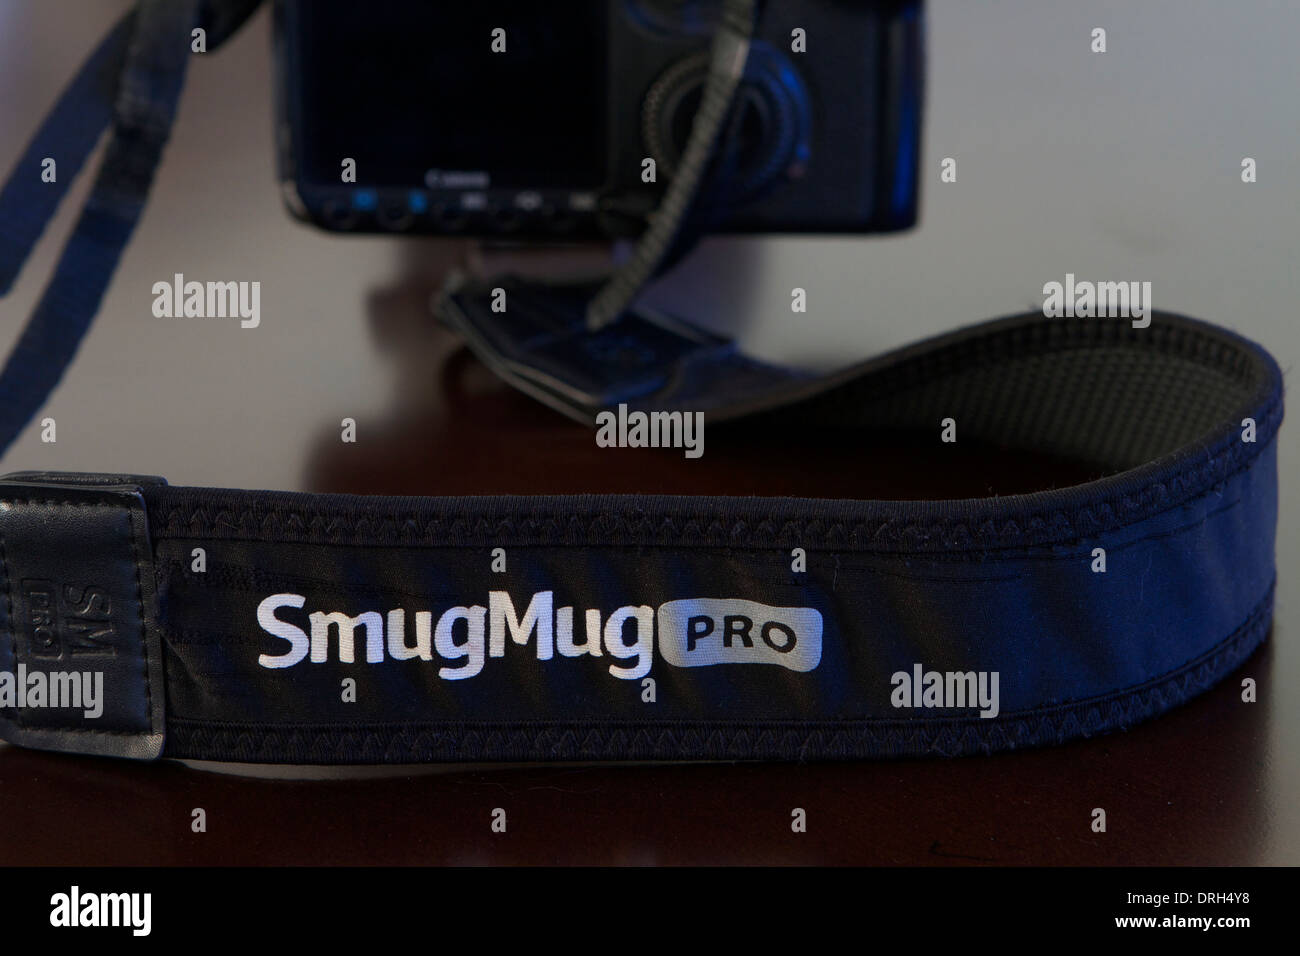 Smumug  photo sharing camera strap logo Stock Photo